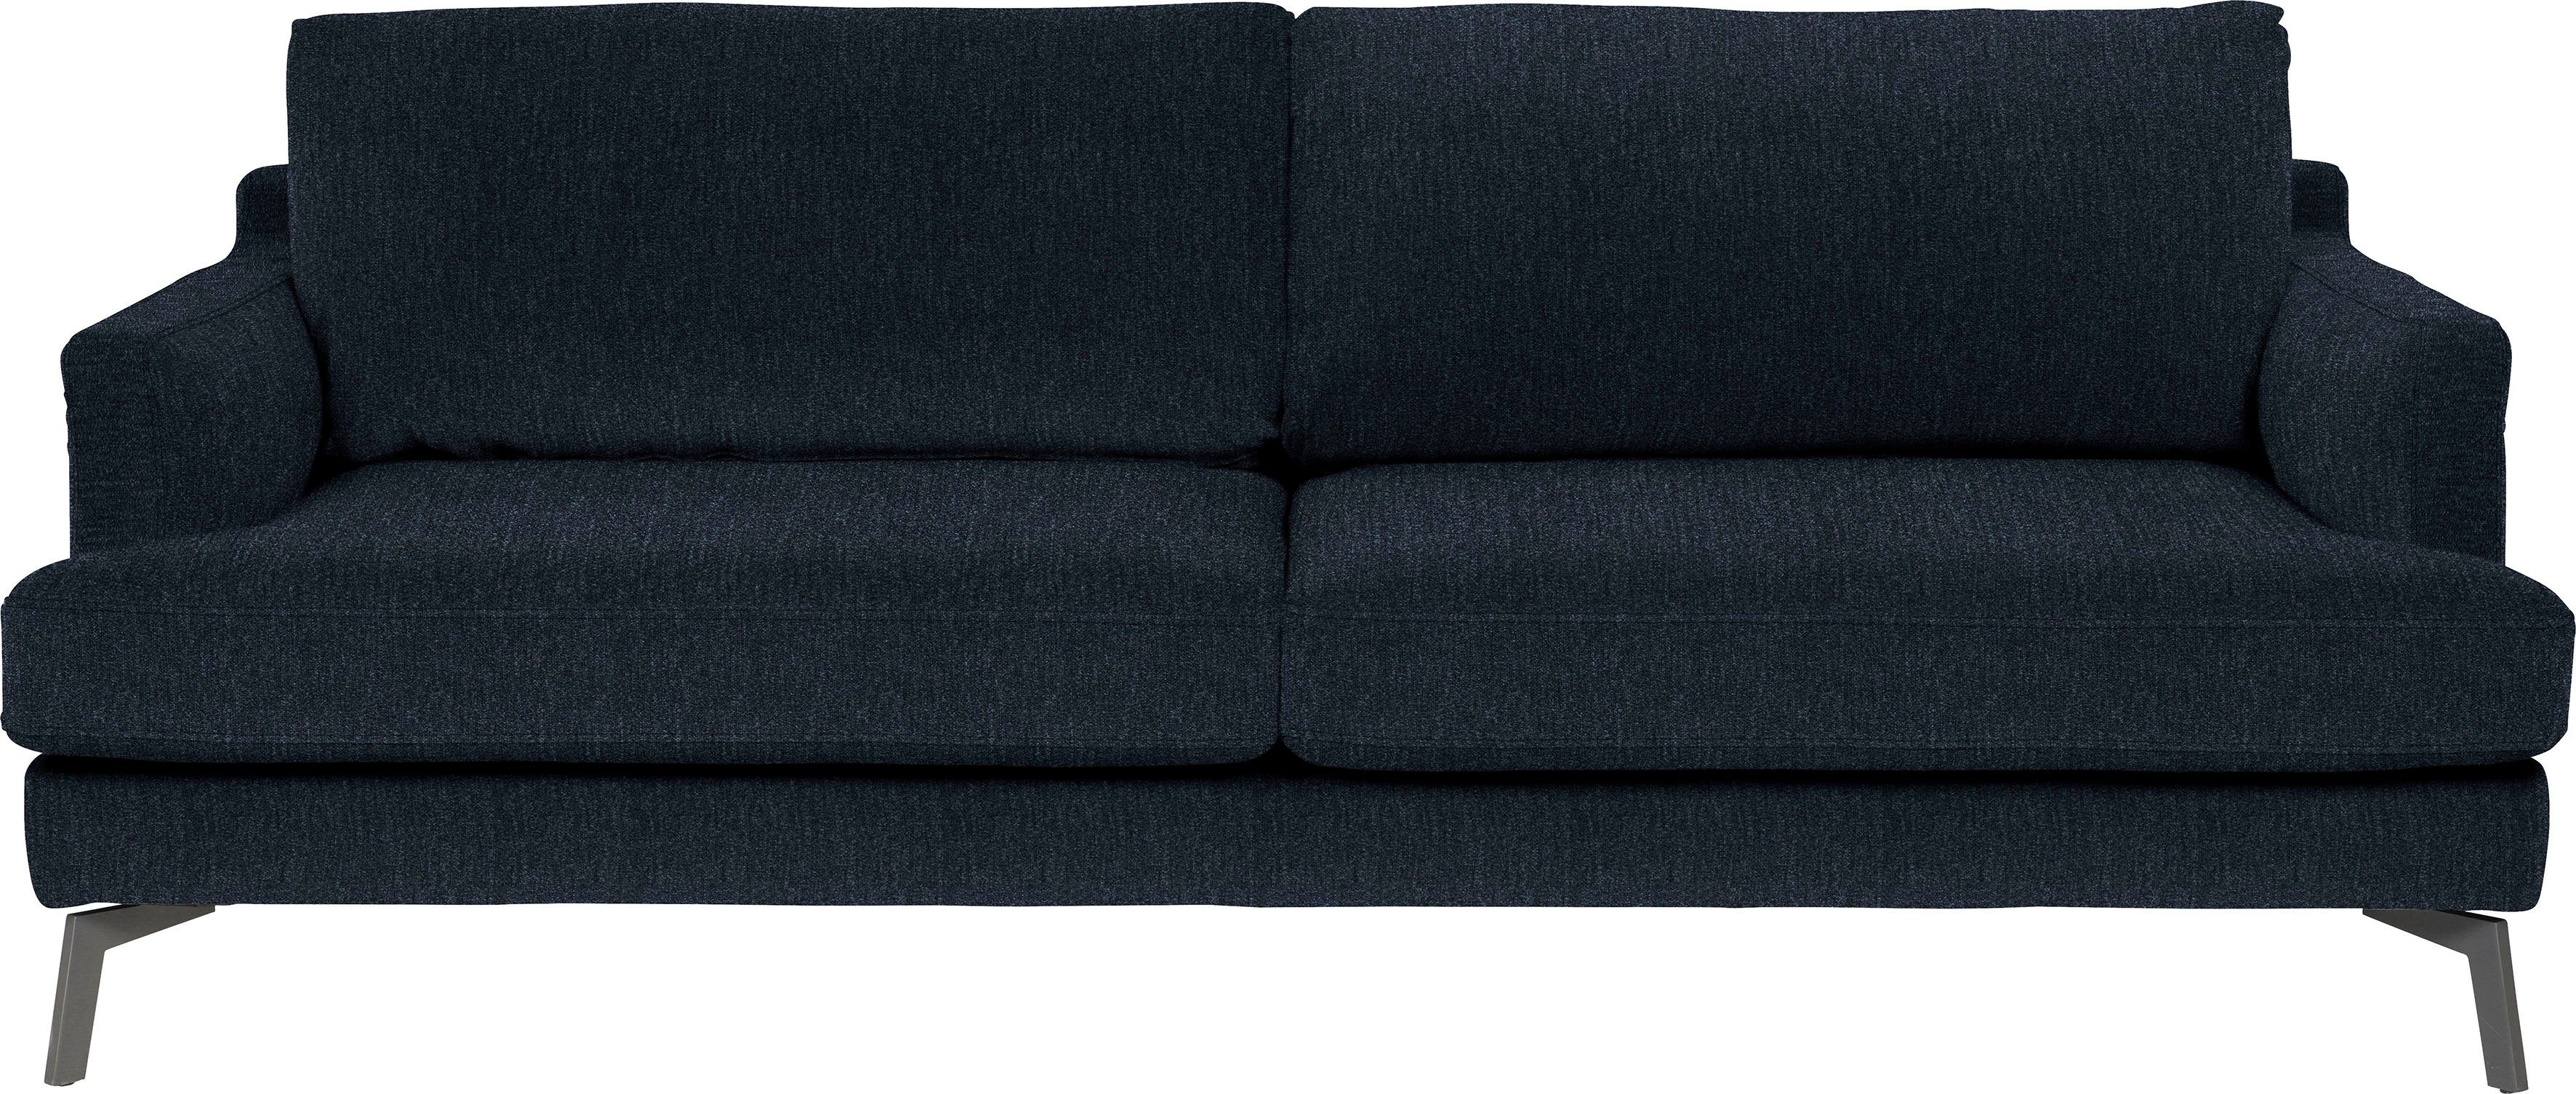 furninova 3-Sitzer Saga, ein skandinavischen blu Design im Klassiker midnight